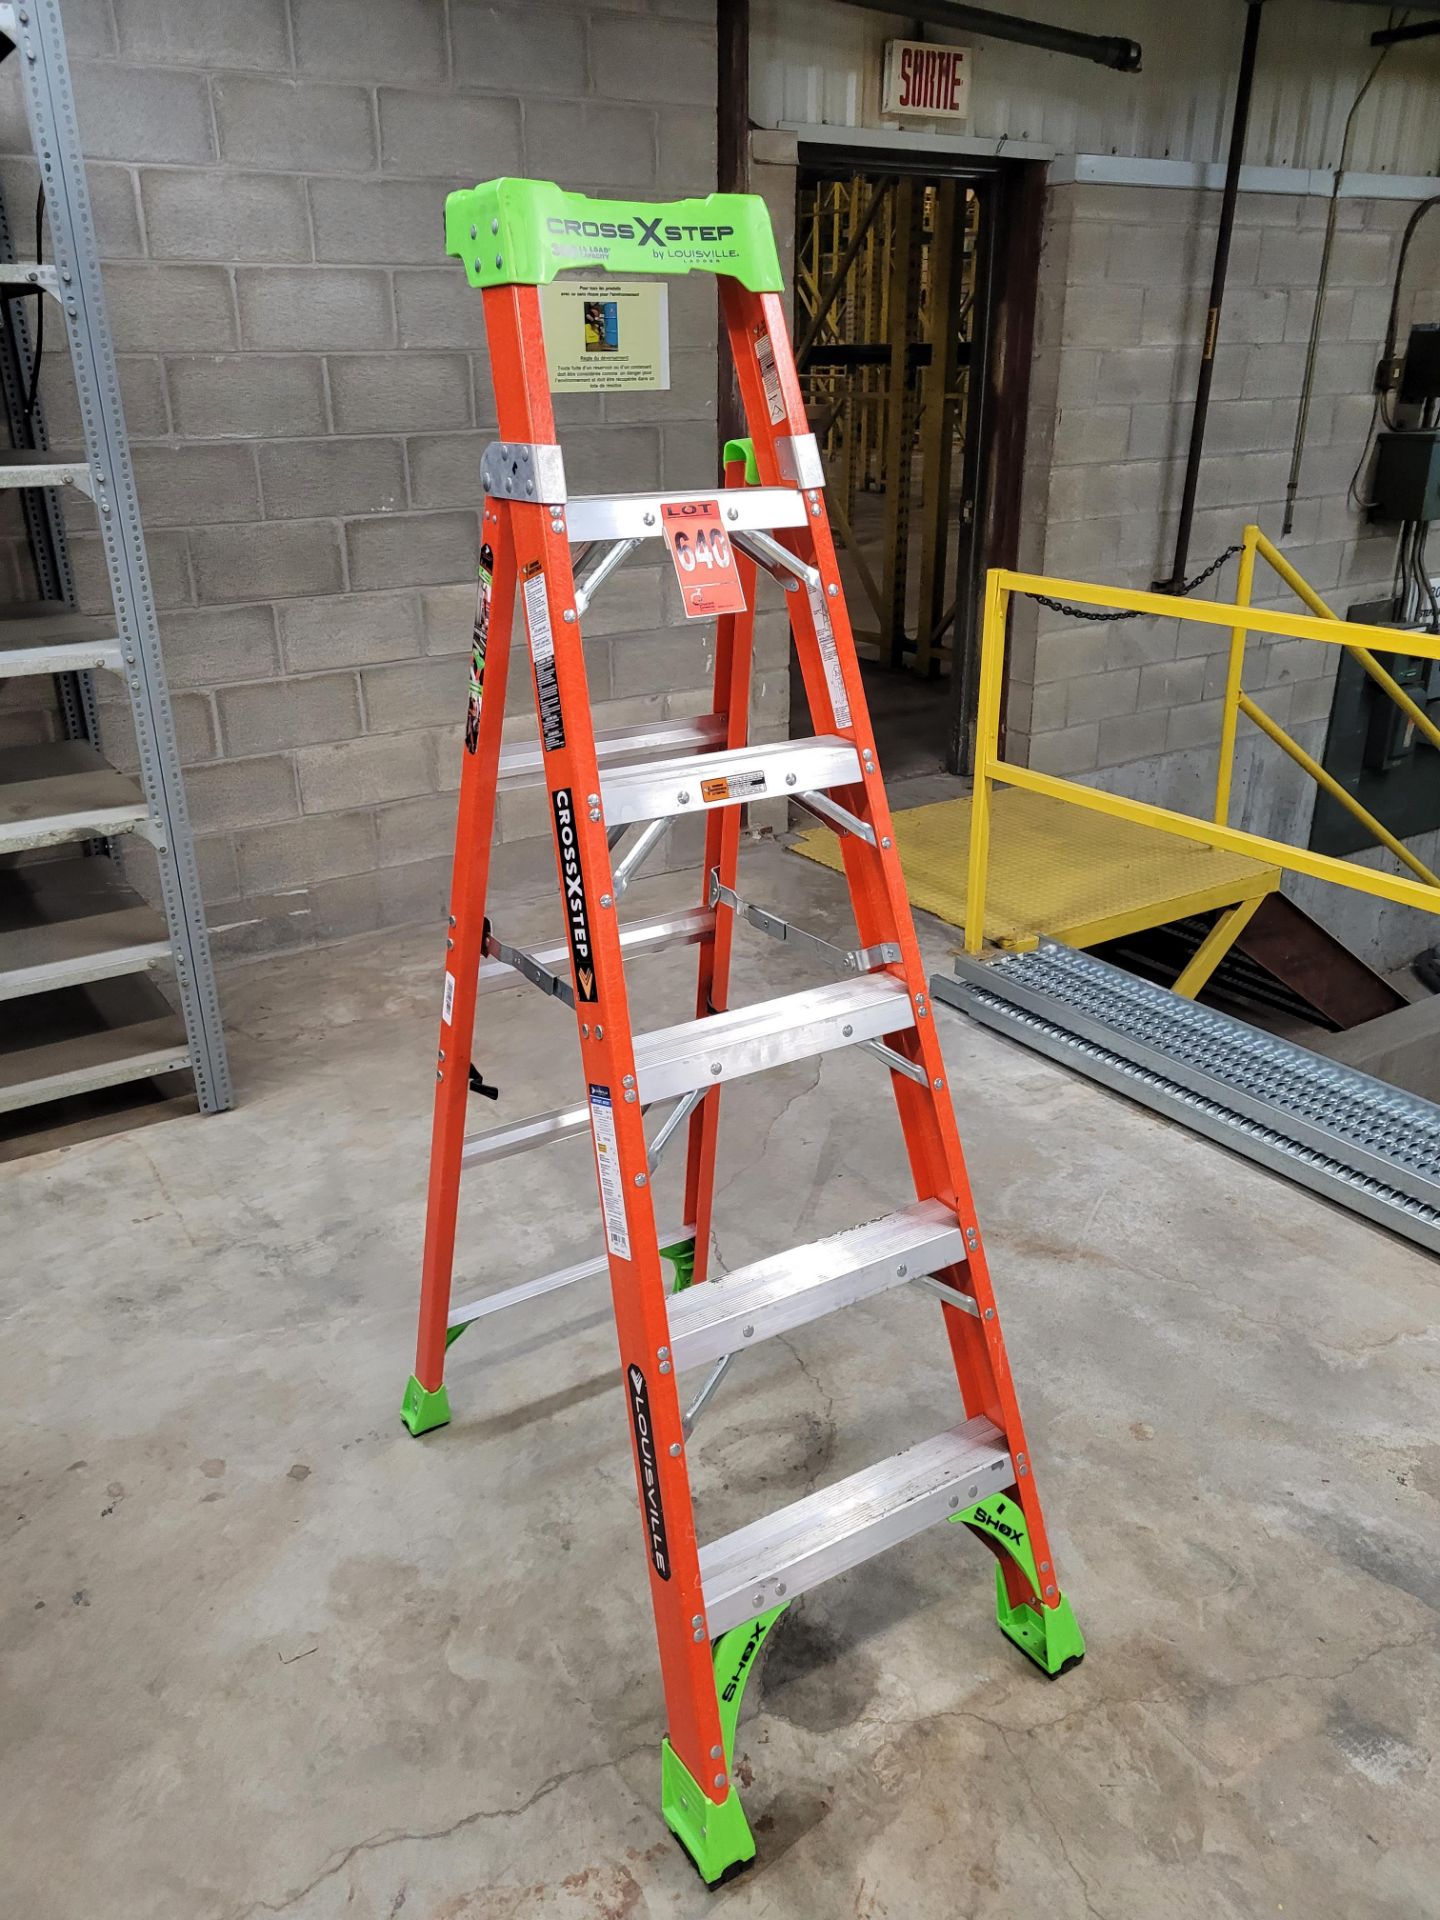 LOUSIVILLE Cross Step 6' fibreglass aluminum step ladder